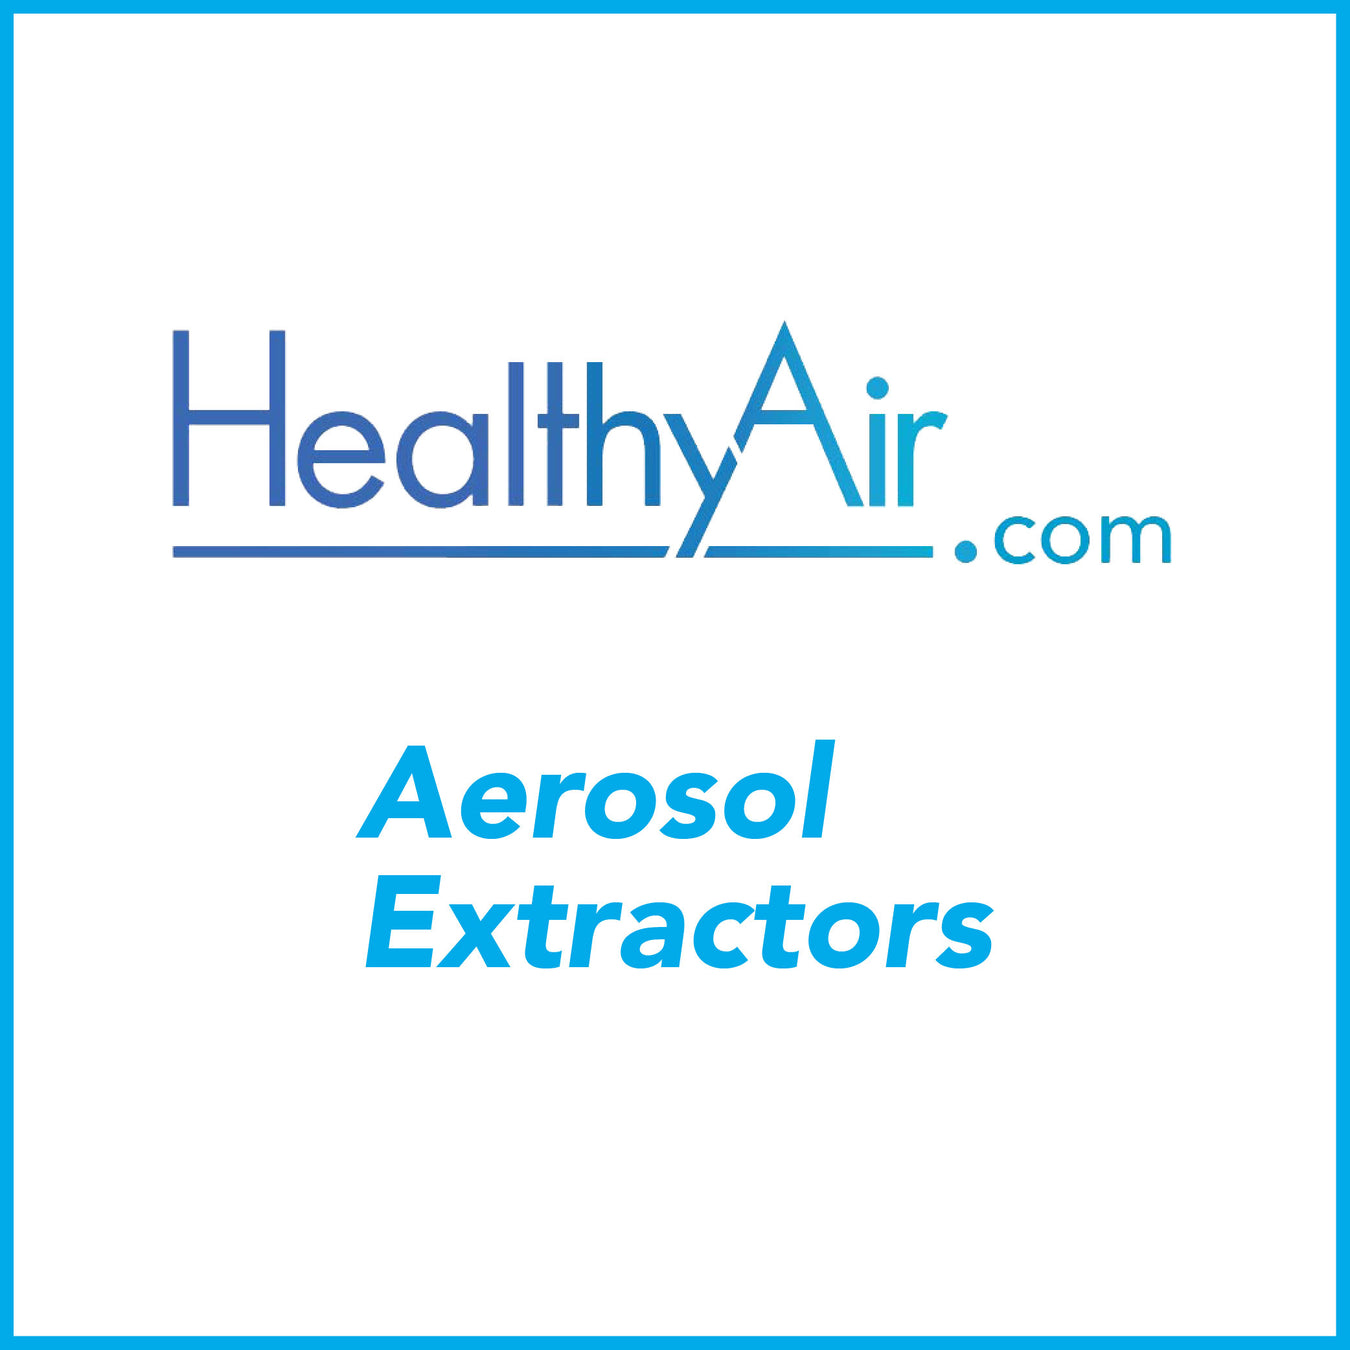 Dental Aerosol Extractors - Healthy Air Inc.